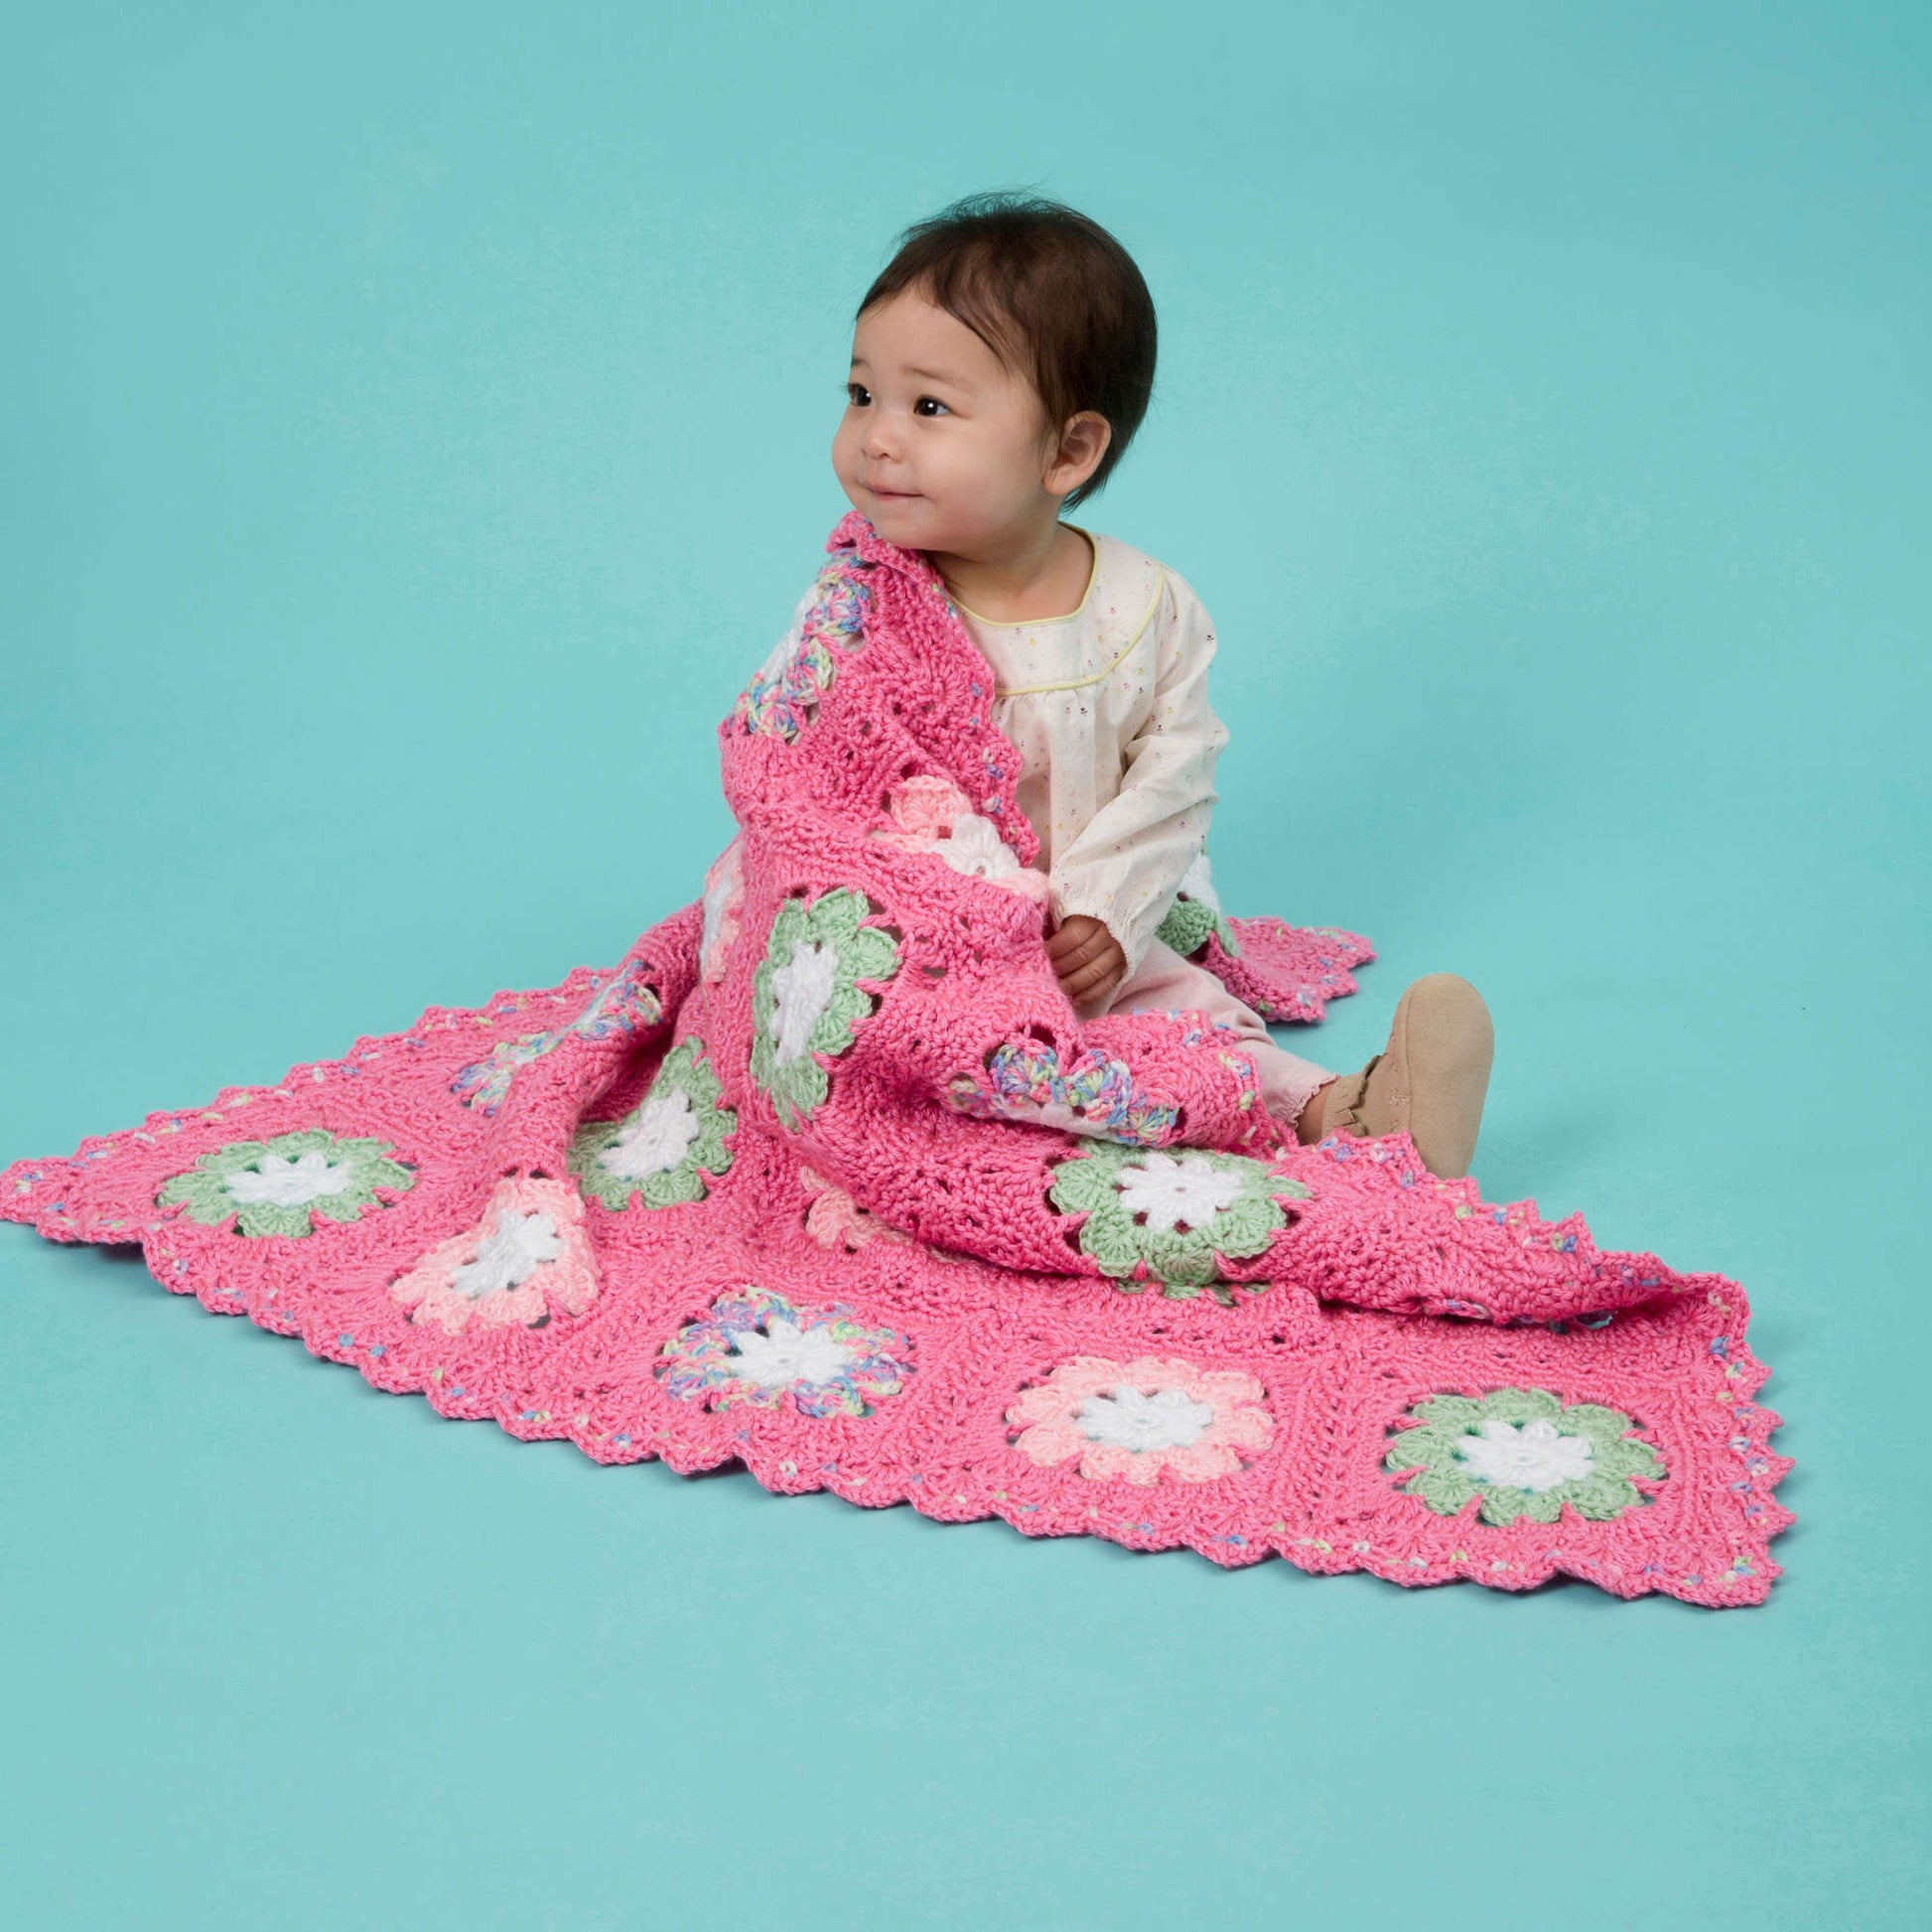 Free Red Heart Flower Crochet Baby Blanket Pattern